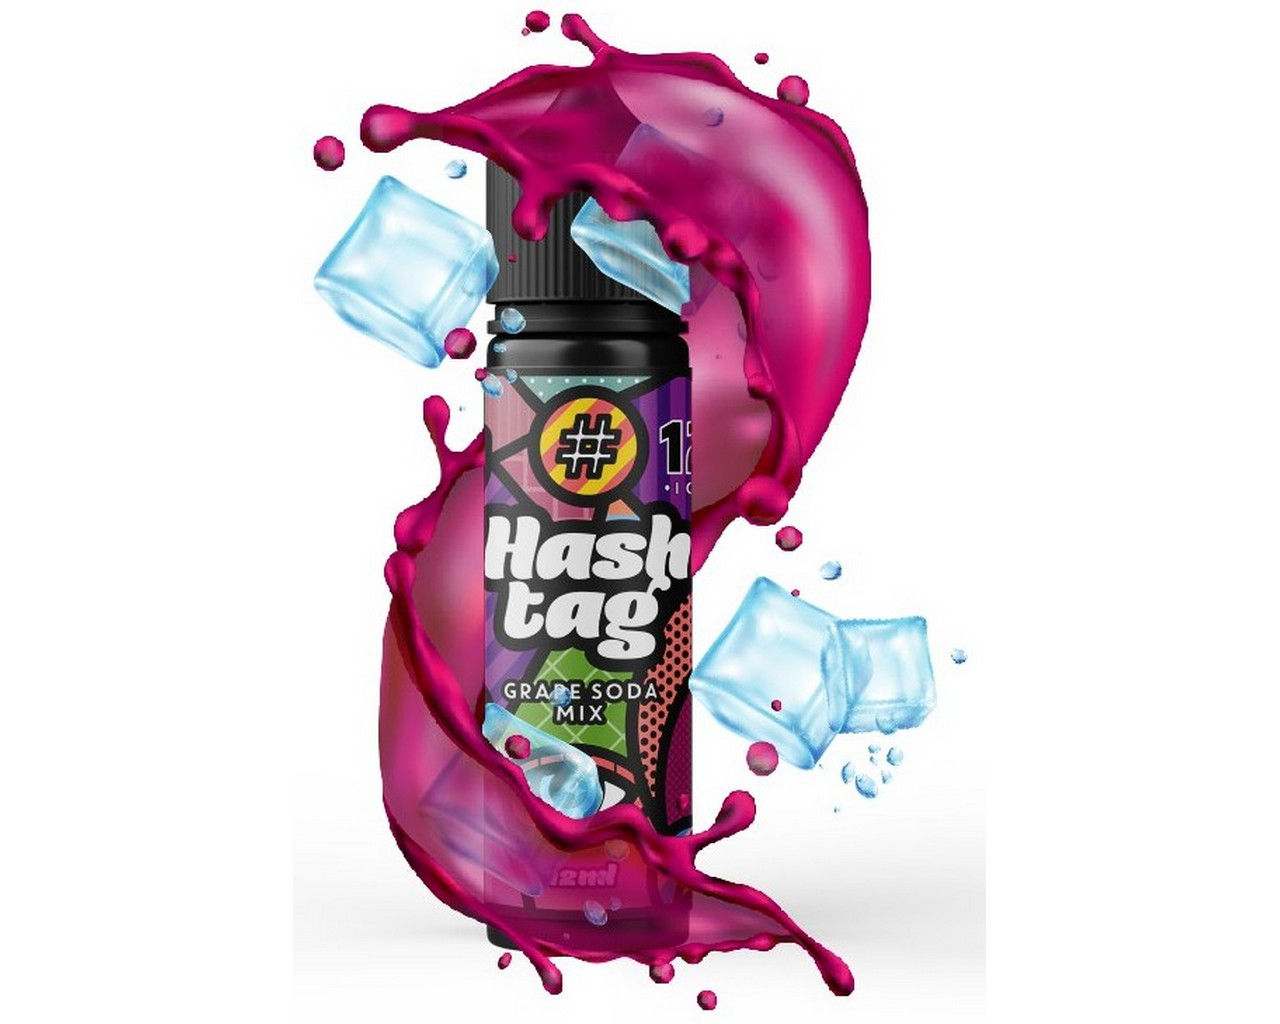 Hashtag Flavorshot Grape Soda Mix Ice 12/60ml